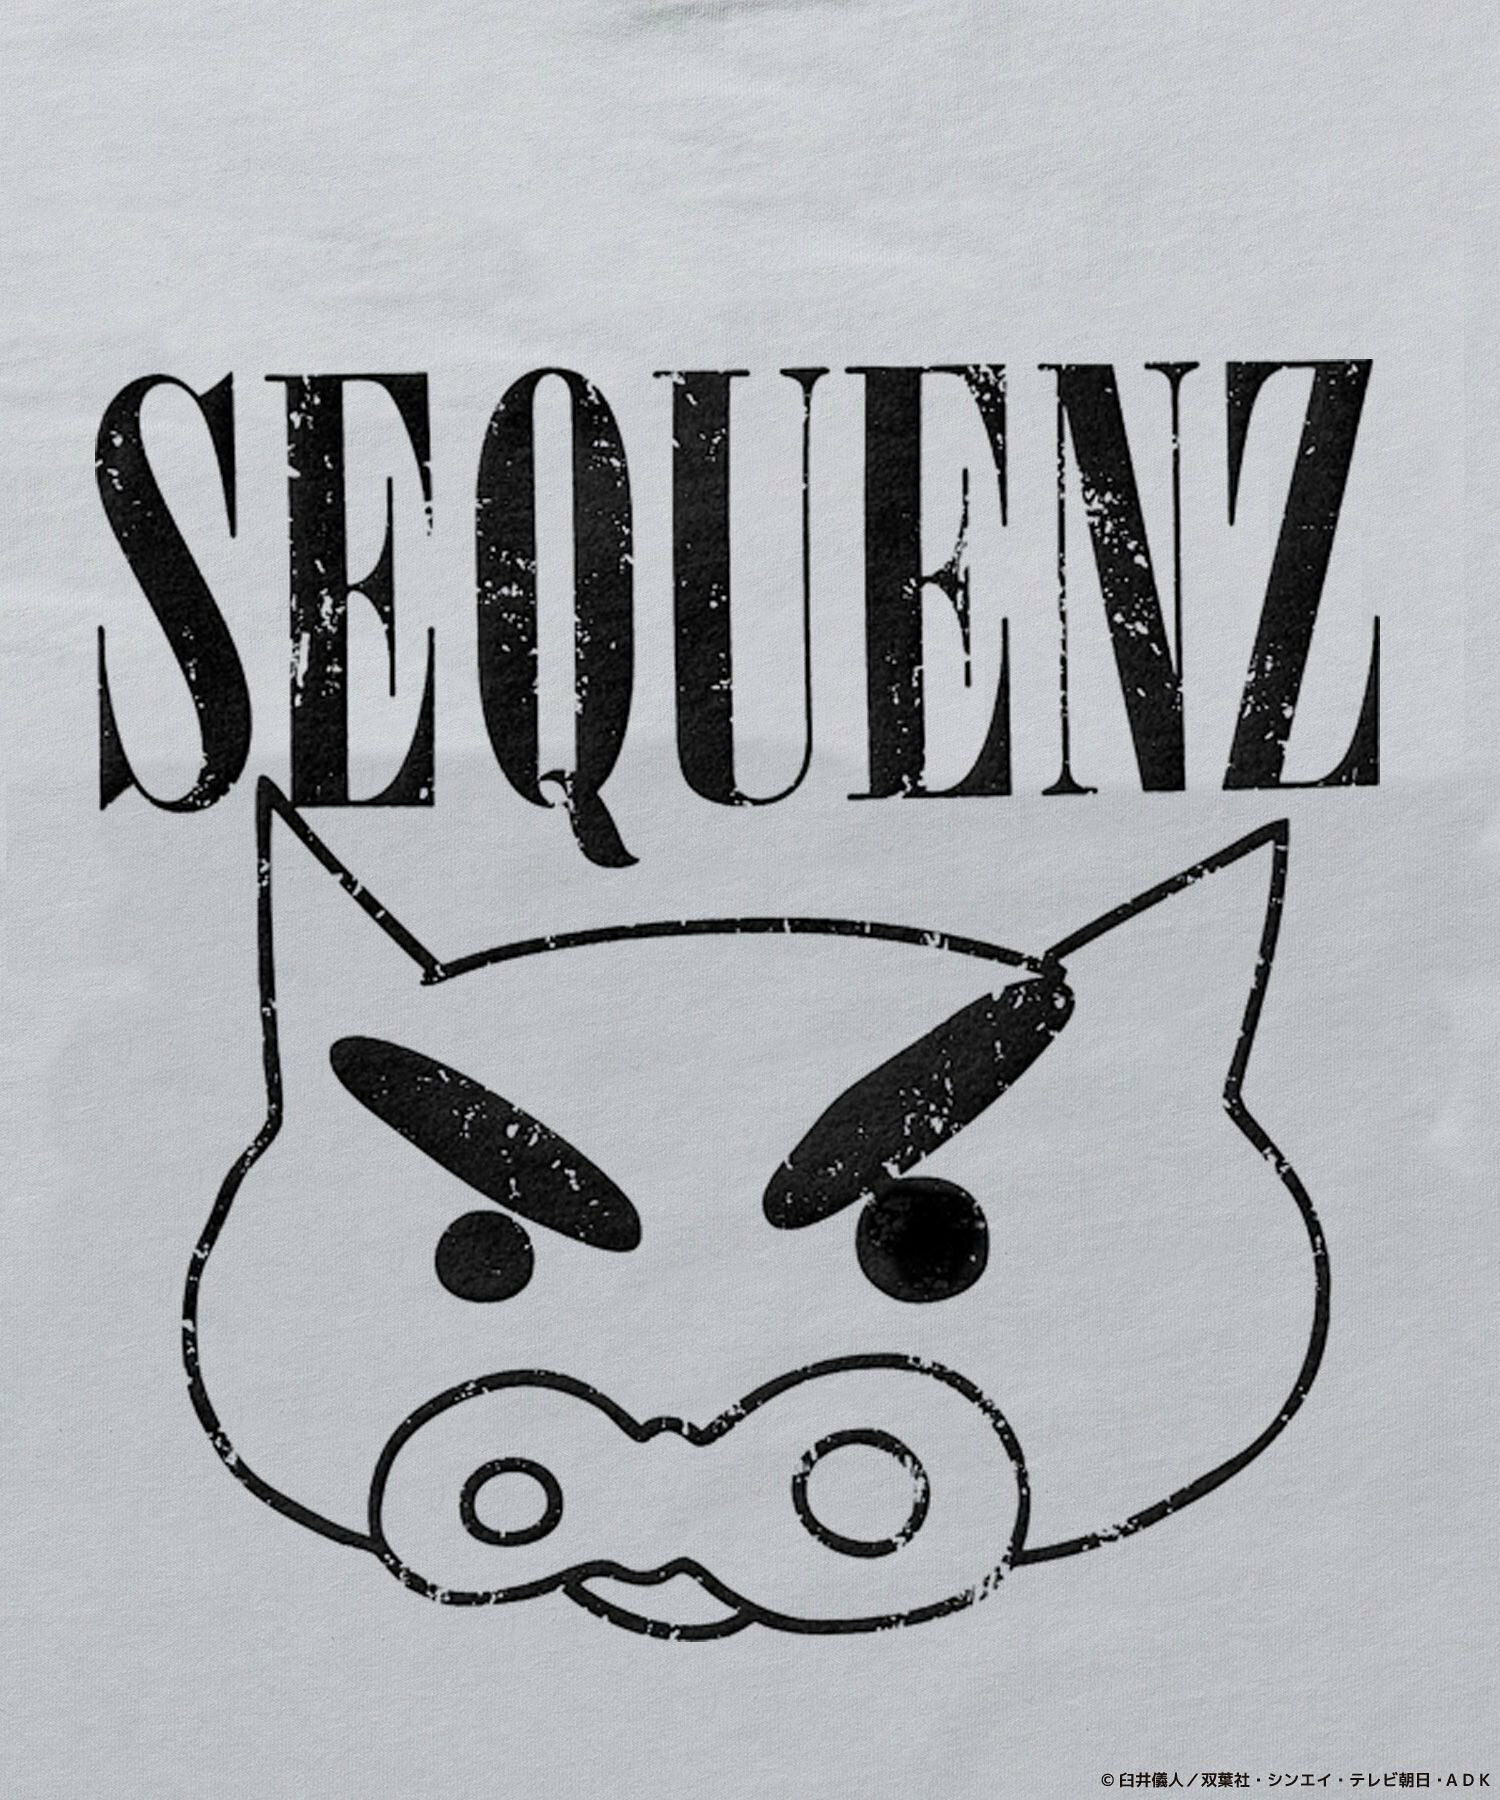 【SEQUENZ】CS BURIBURI FADE S/S TEE / クレヨンしんちゃん 半袖Tシャツ クルーネック ワンポイント バックプリント